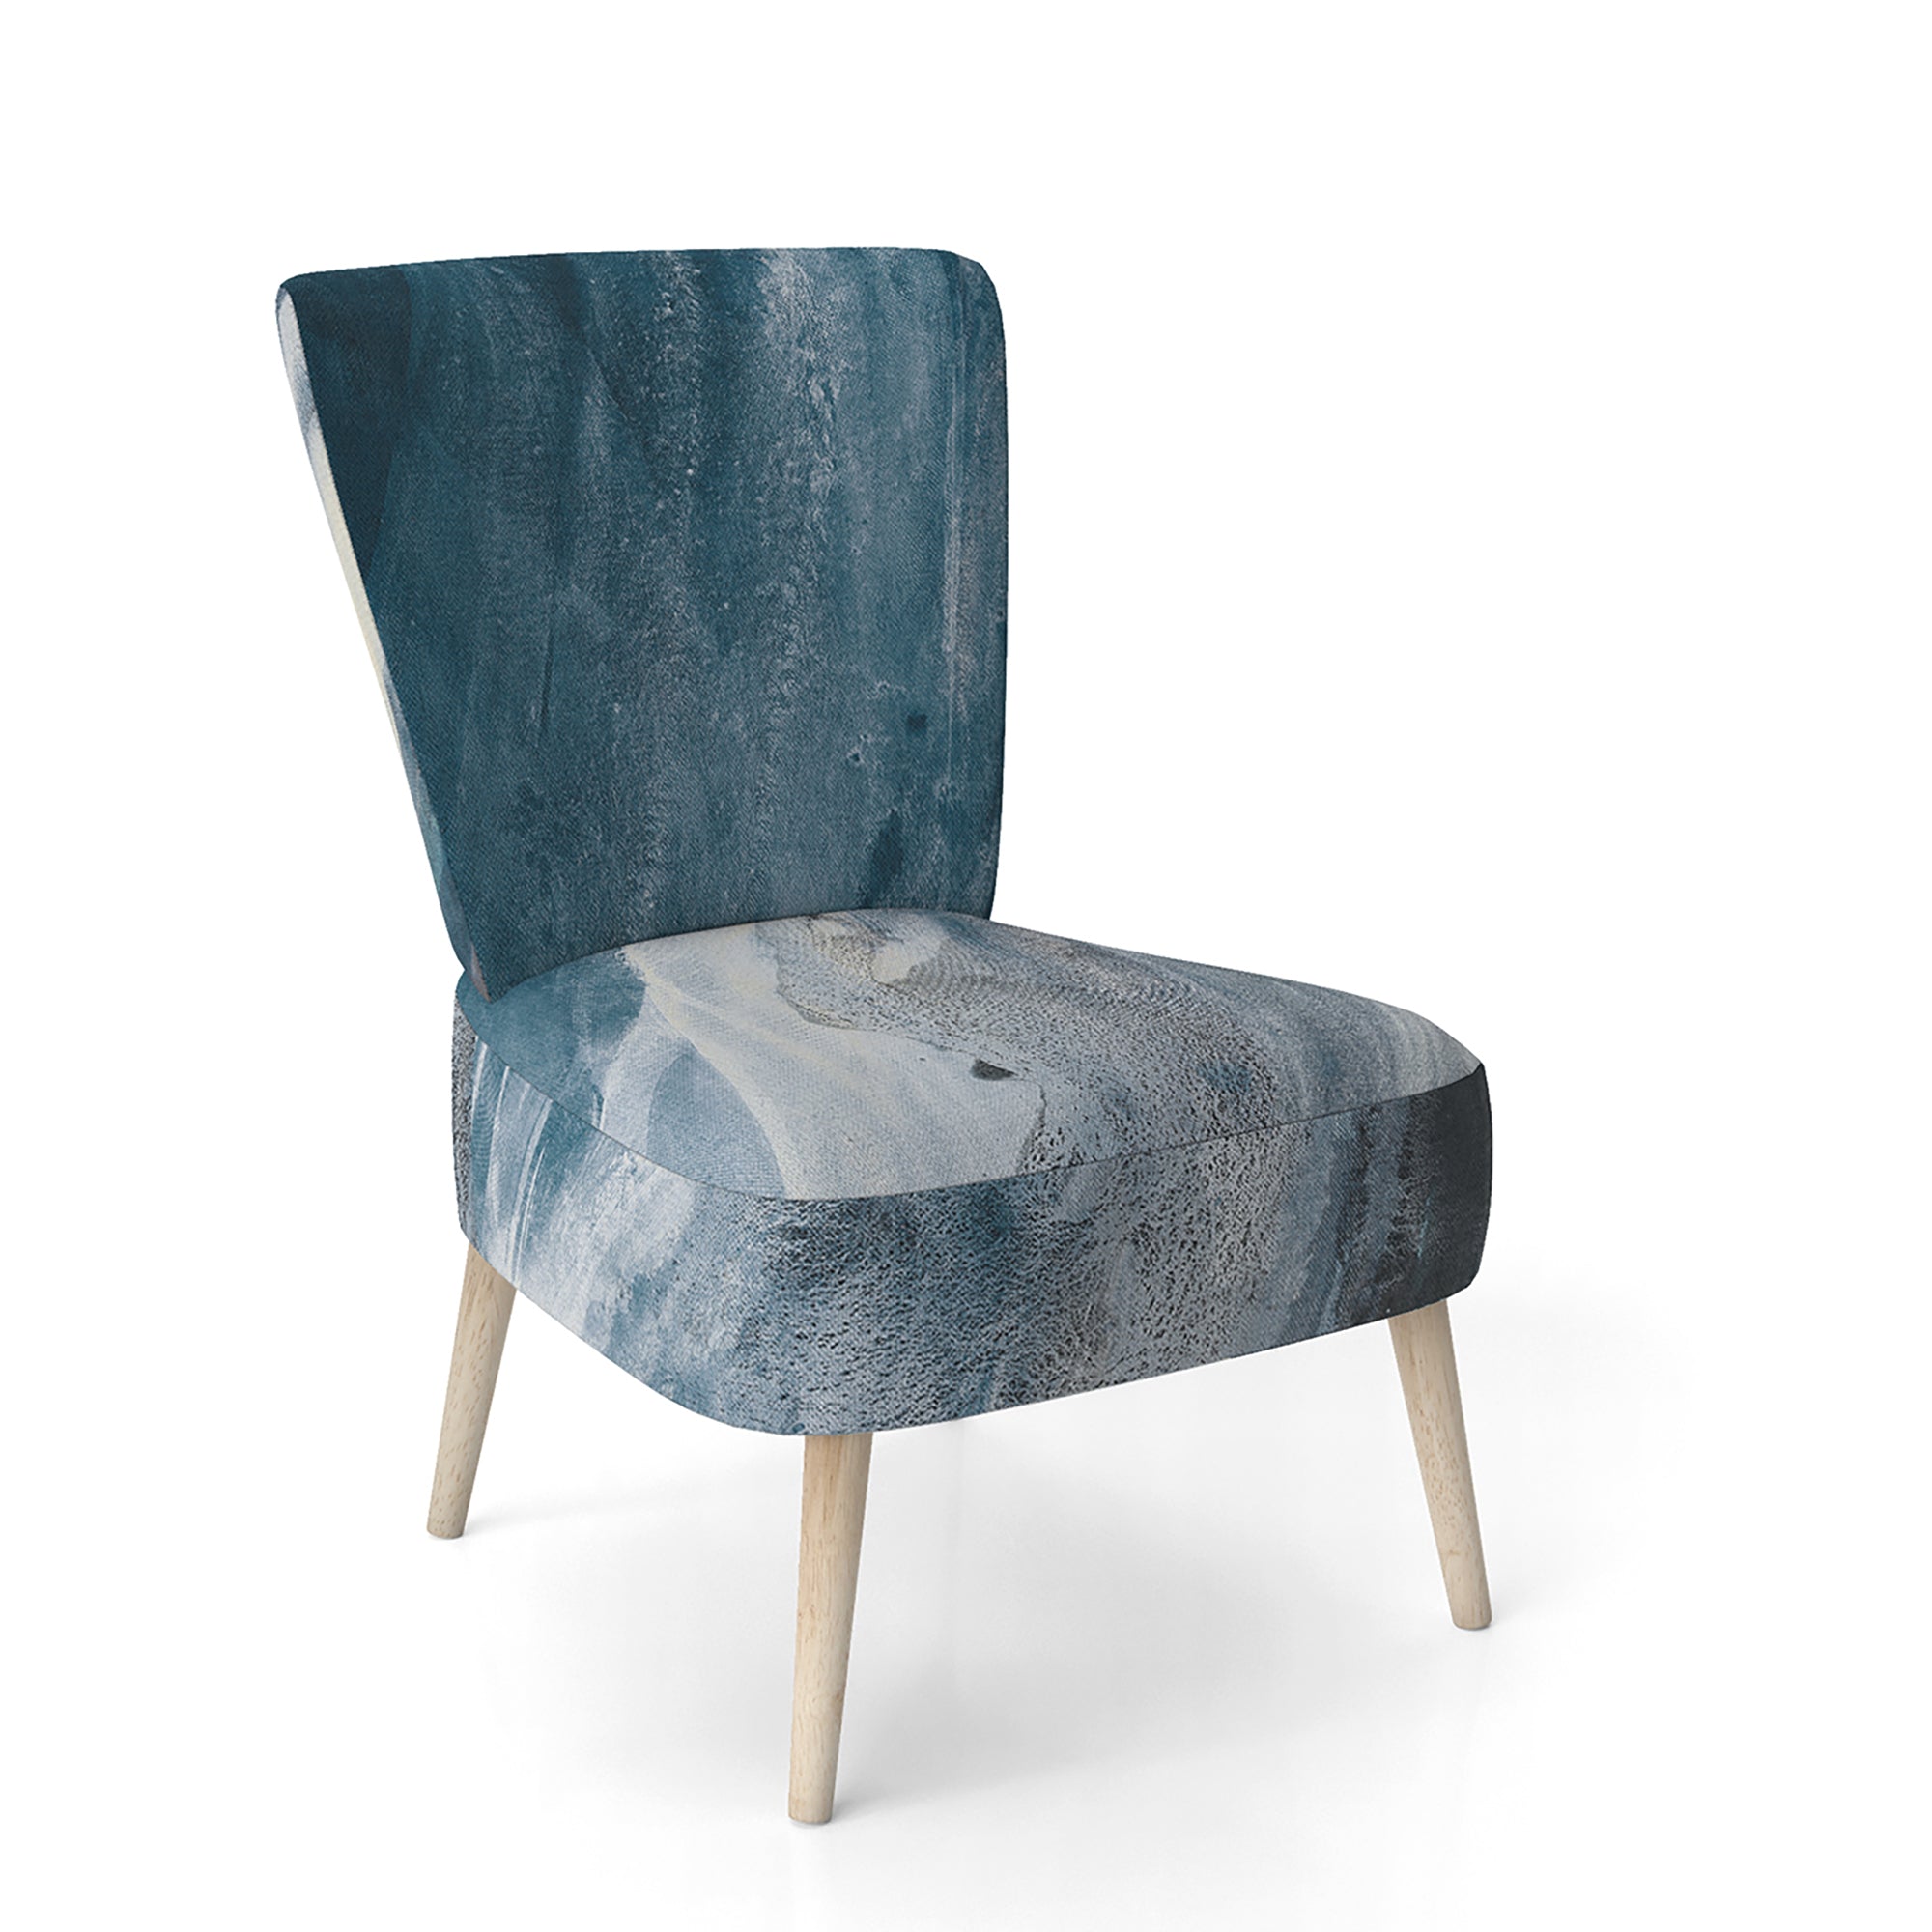 Splash Blue Indigo Modern Accent Chair